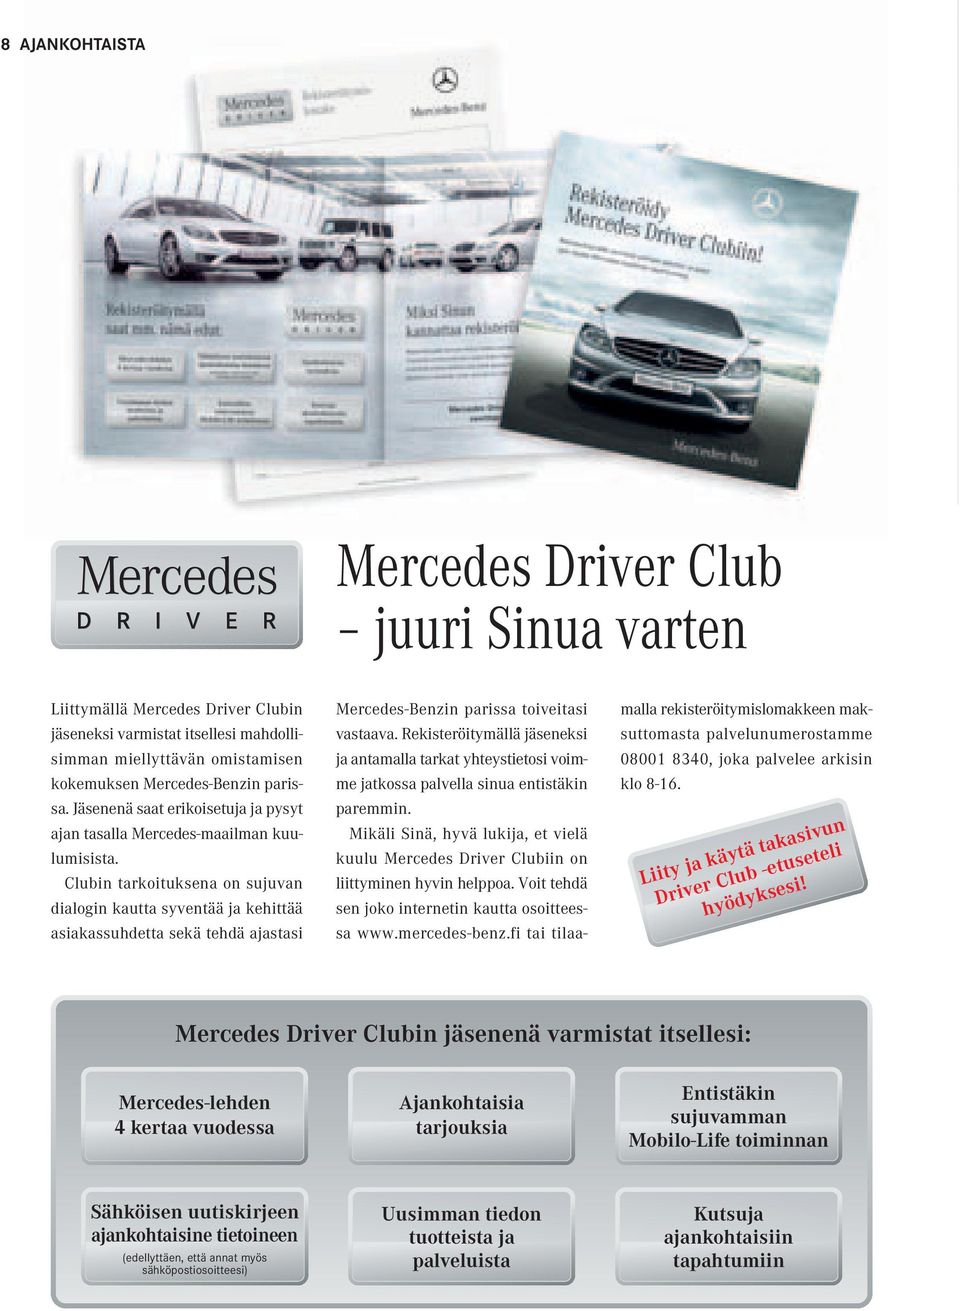 Clubin tarkoituksena on sujuvan dialogin kautta syventää ja kehittää asiakassuhdetta sekä tehdä ajastasi Mercedes-Benzin parissa toiveitasi vastaava.